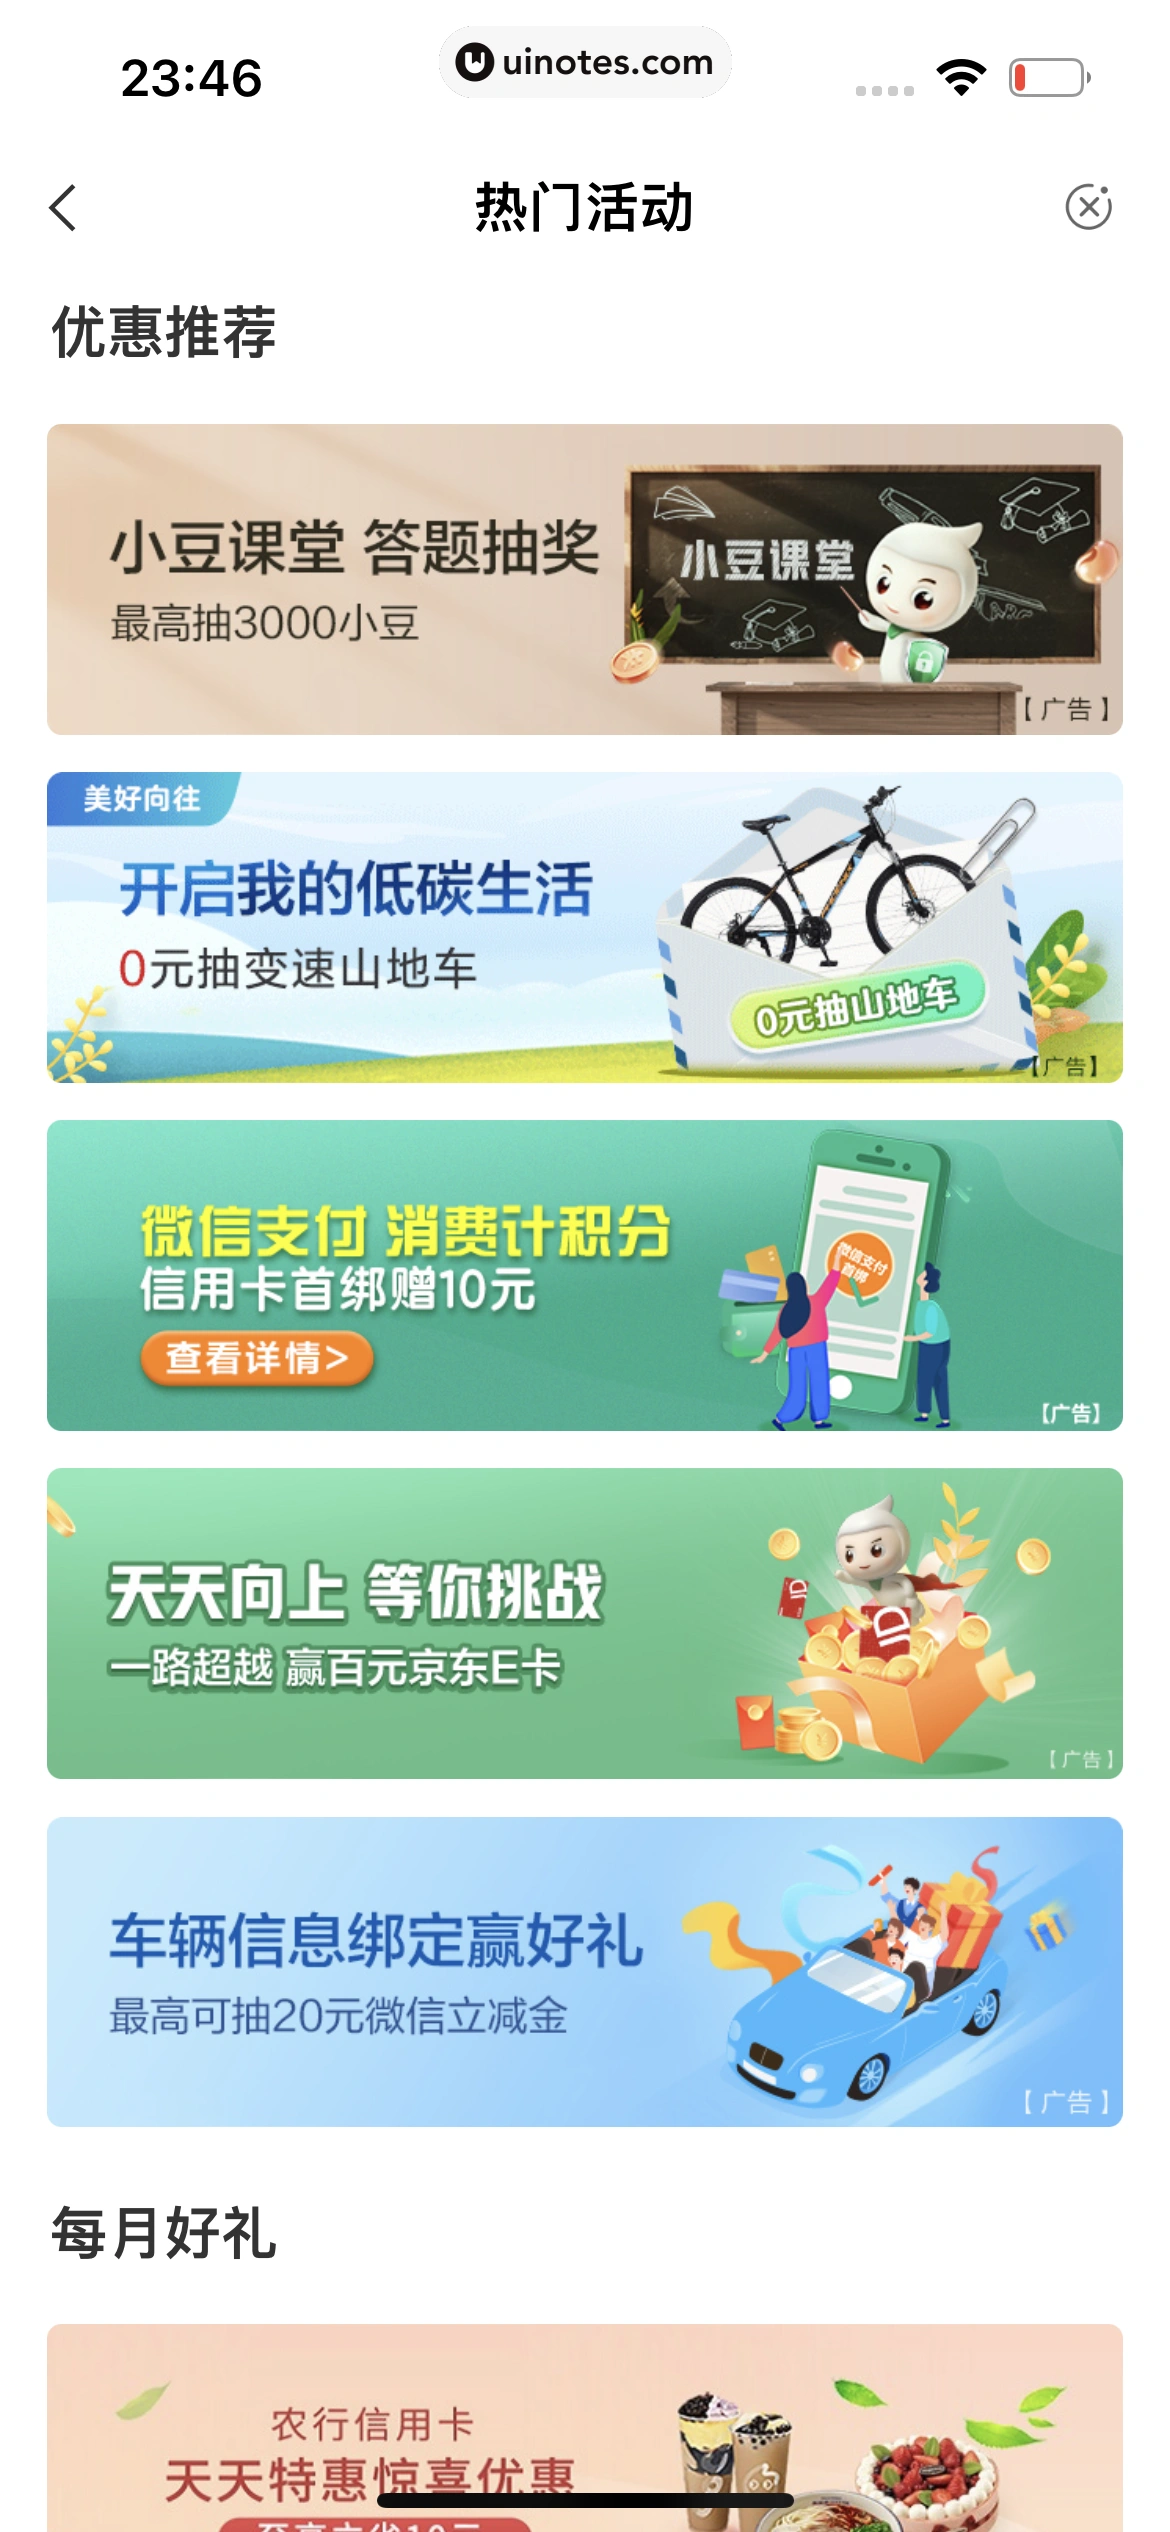 中国农业银行 App 截图 162 - UI Notes